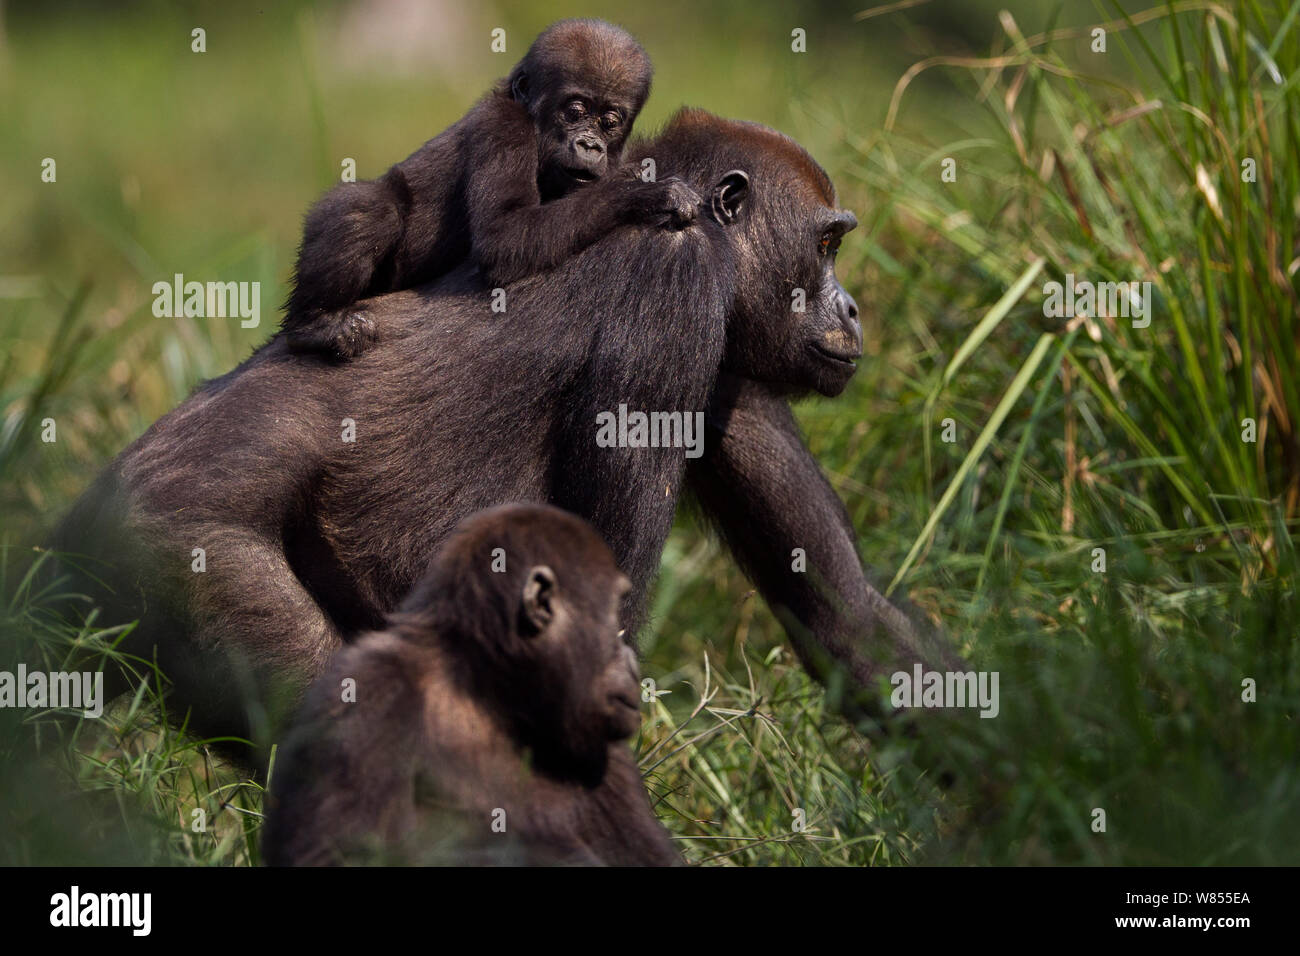 Gorille de plaine de l'ouest (Gorilla gorilla gorilla) femme opambi «» «son enfant sur opo' âgés de 18 mois sur le dos, marchant à travers Bai Hokou, Spécial forêt dense de Dzanga Sangha, République centrafricaine. Décembre 2011. Banque D'Images